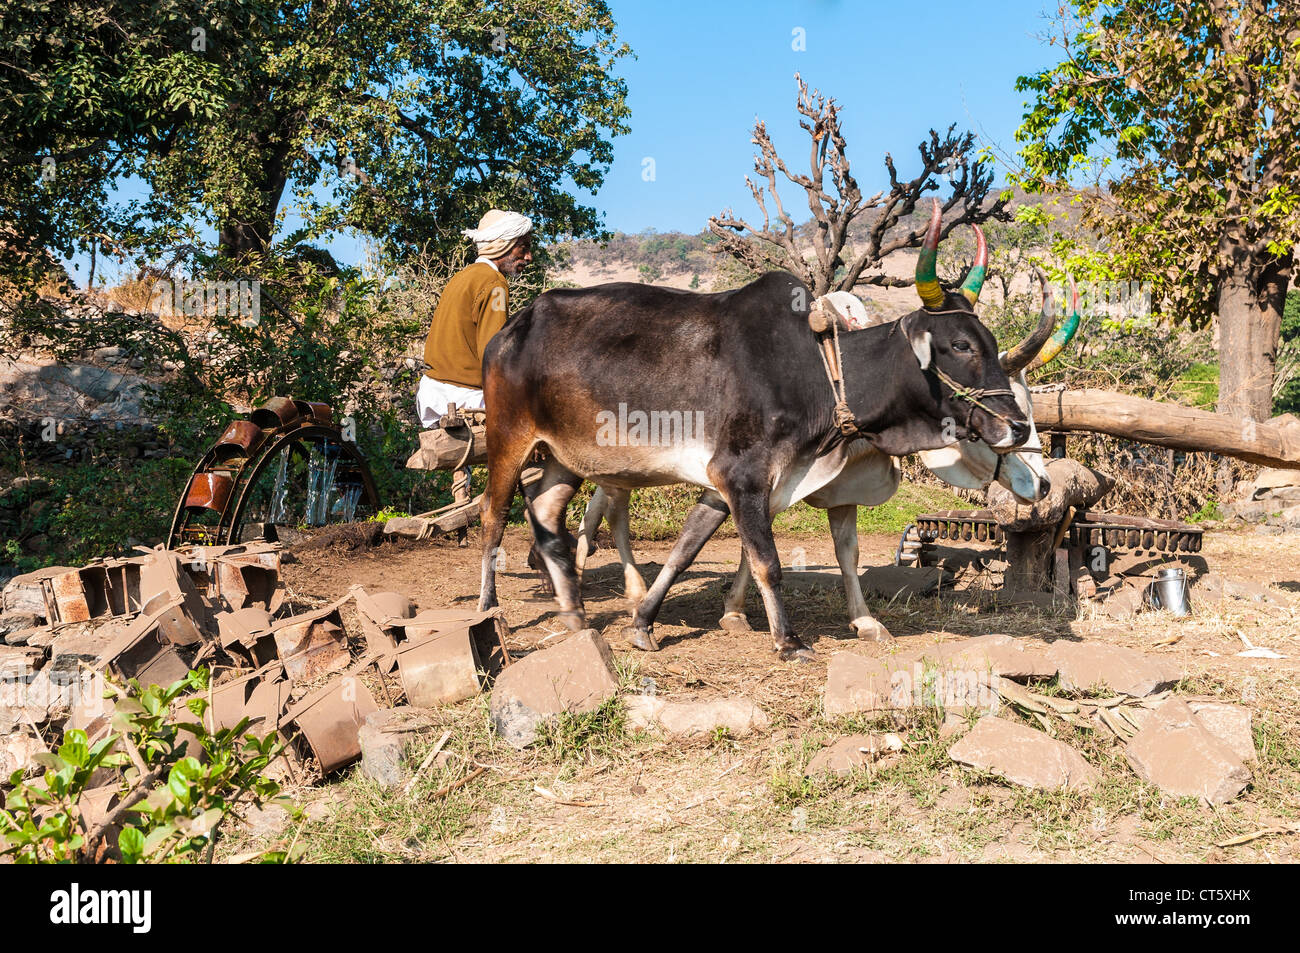 Impianto di irrigazione nelle zone rurali del Rajasthan, India. Da un bene, l'acqua viene pompata fino da bestiame bovino Foto Stock